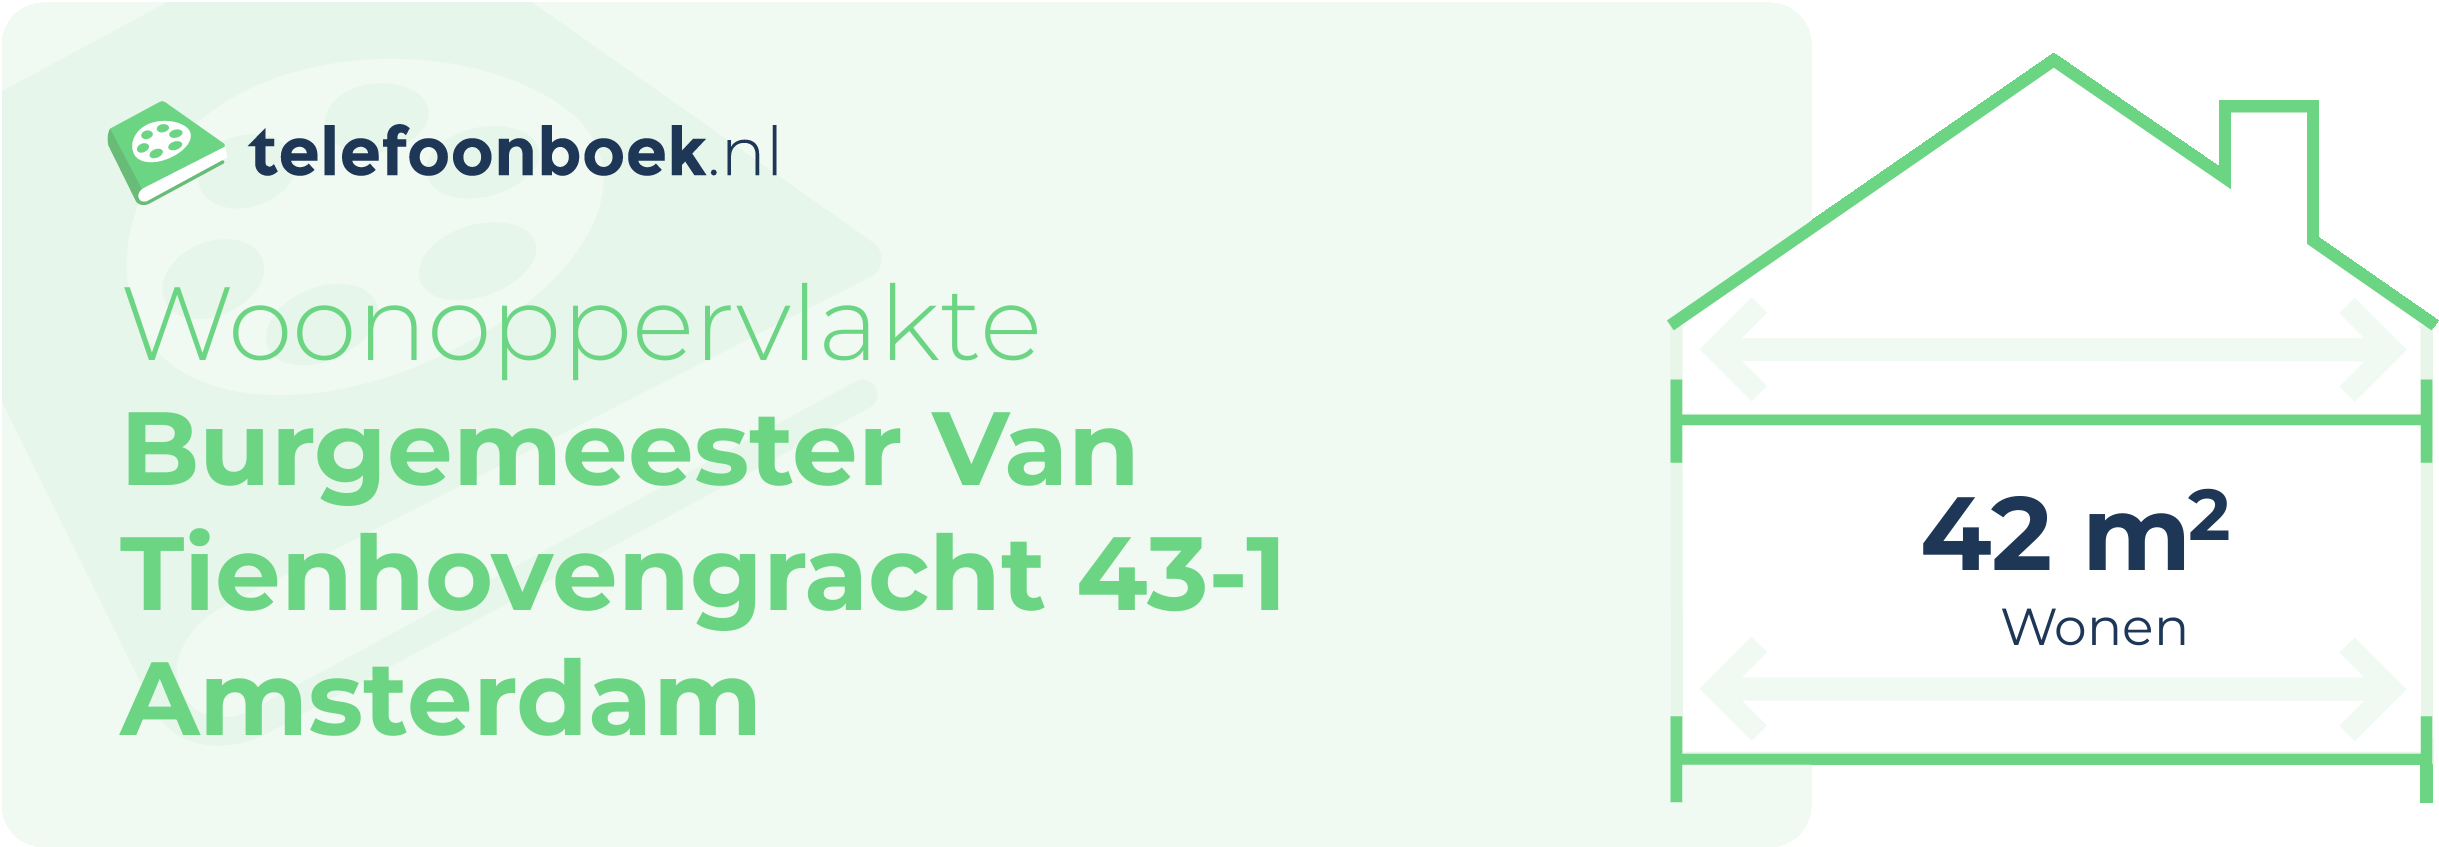 Woonoppervlakte Burgemeester Van Tienhovengracht 43-1 Amsterdam